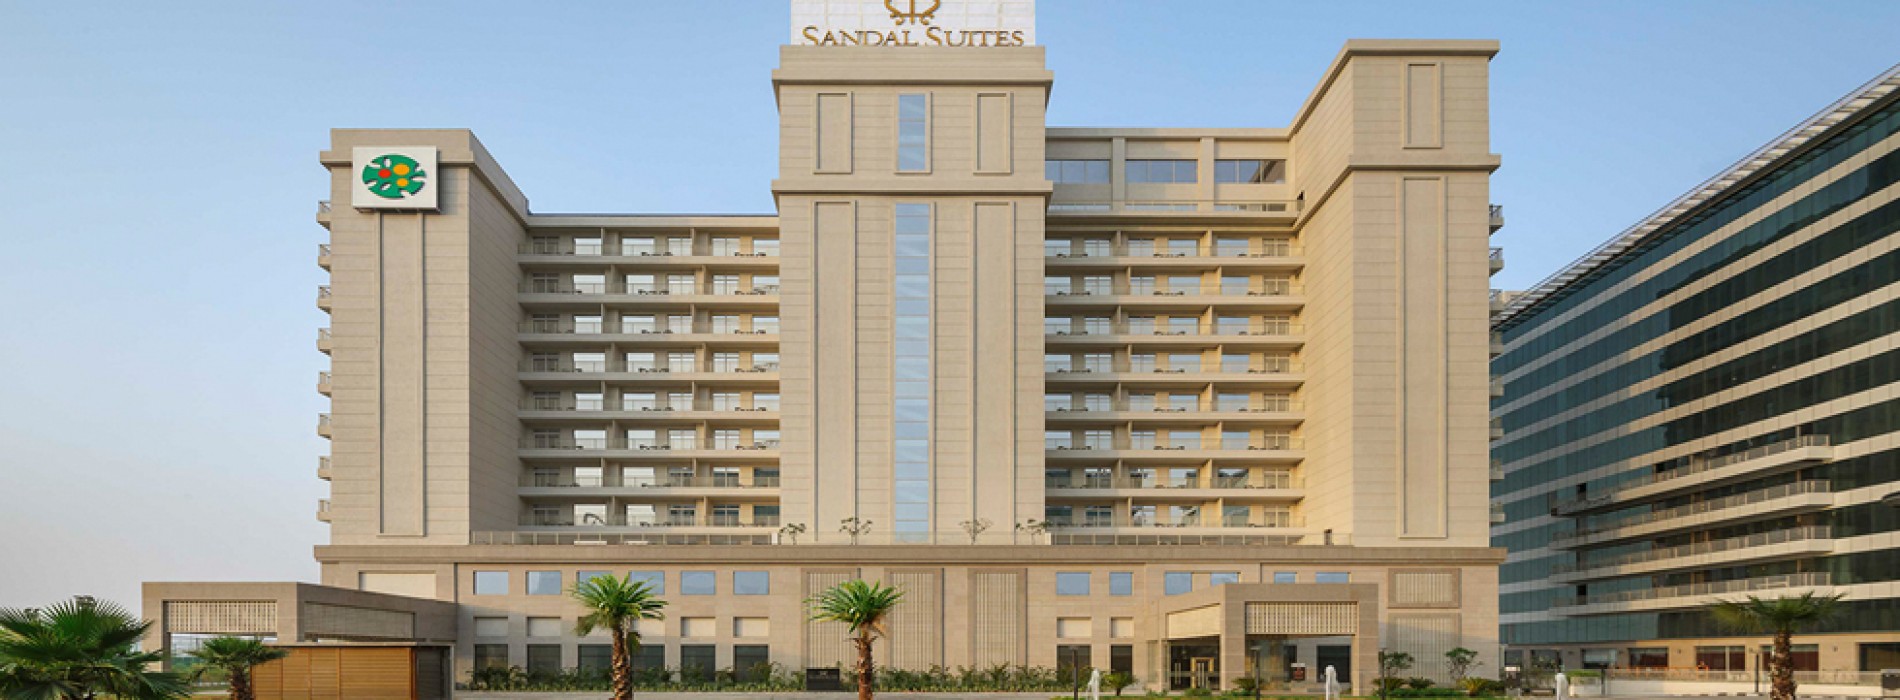 Sandal Suites, Noida’s Ist Upscale Serviced Suites, now open